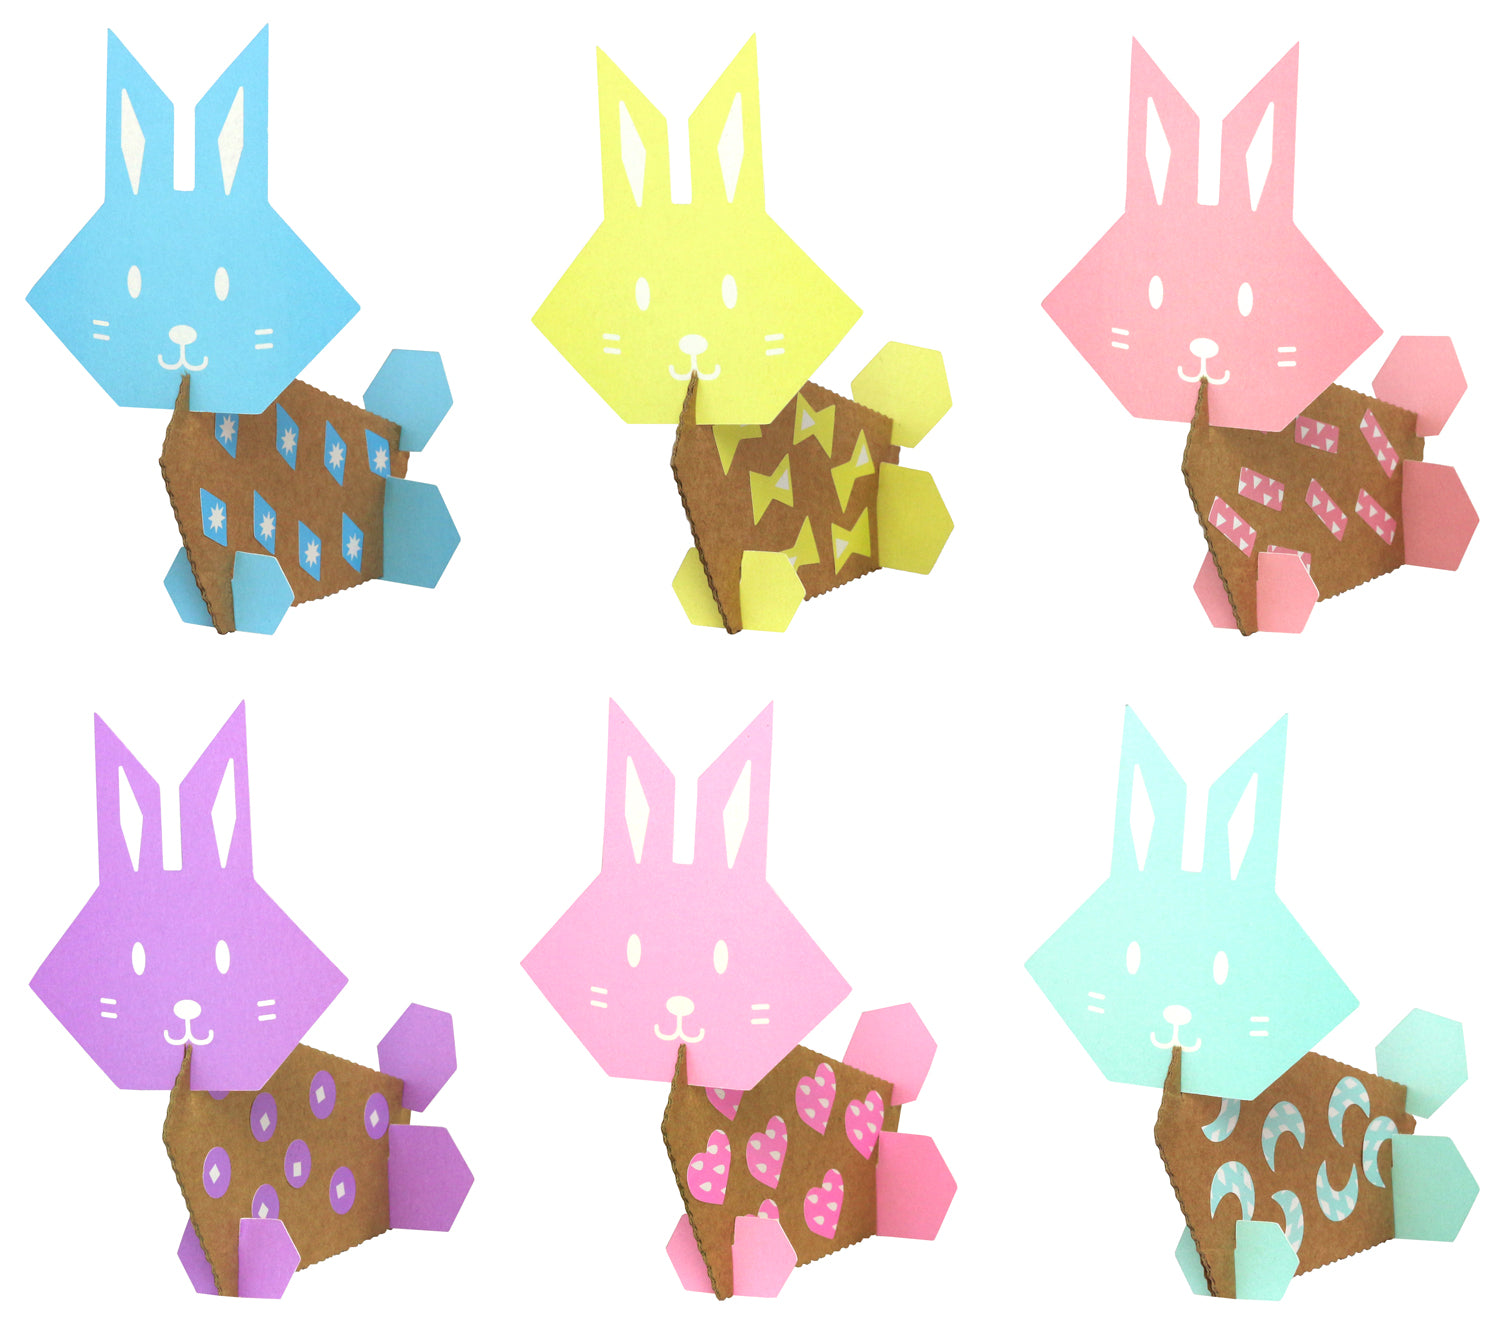 Kit activité manuelle pour enfant : créer des lapins de Paques en papier et carton. Décoration Pâques.